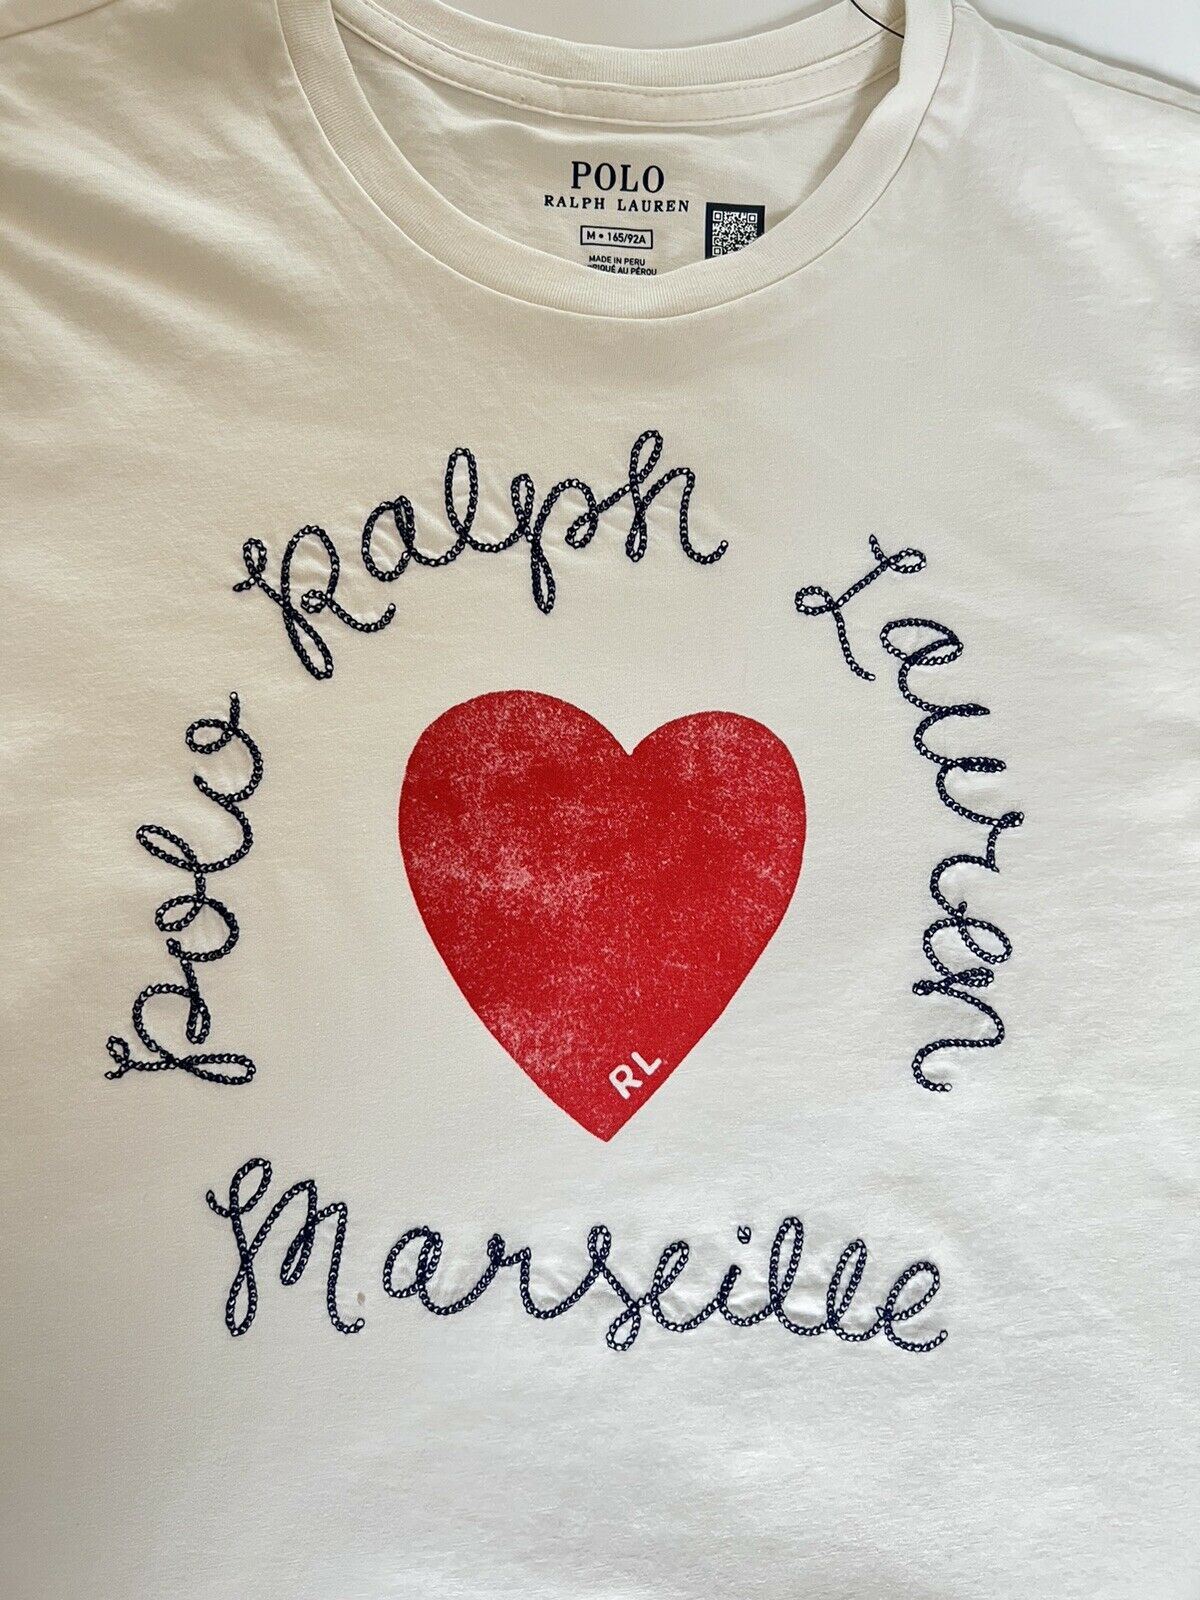 Женская футболка Polo Ralph Lauren Heart, белая, средний размер, NWT 78 долларов США